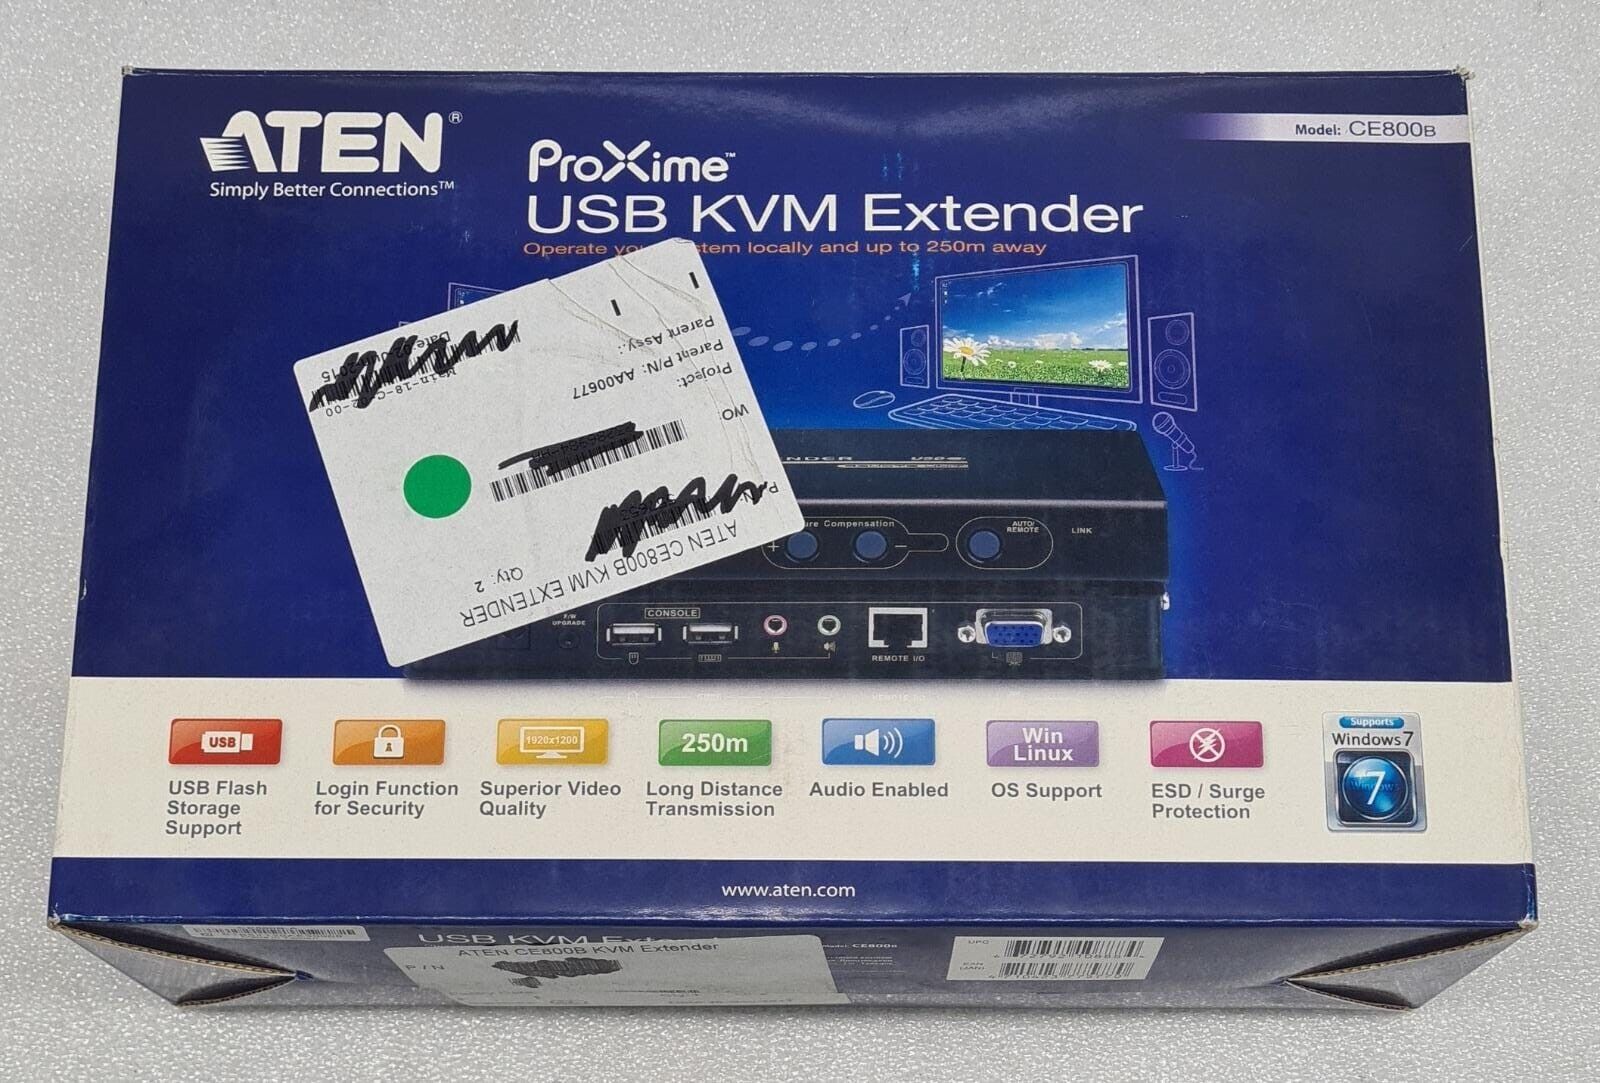 NEW - ATEN ProXime USB KVM Extender CE800B VGA/Audio Dual Console operation Kit